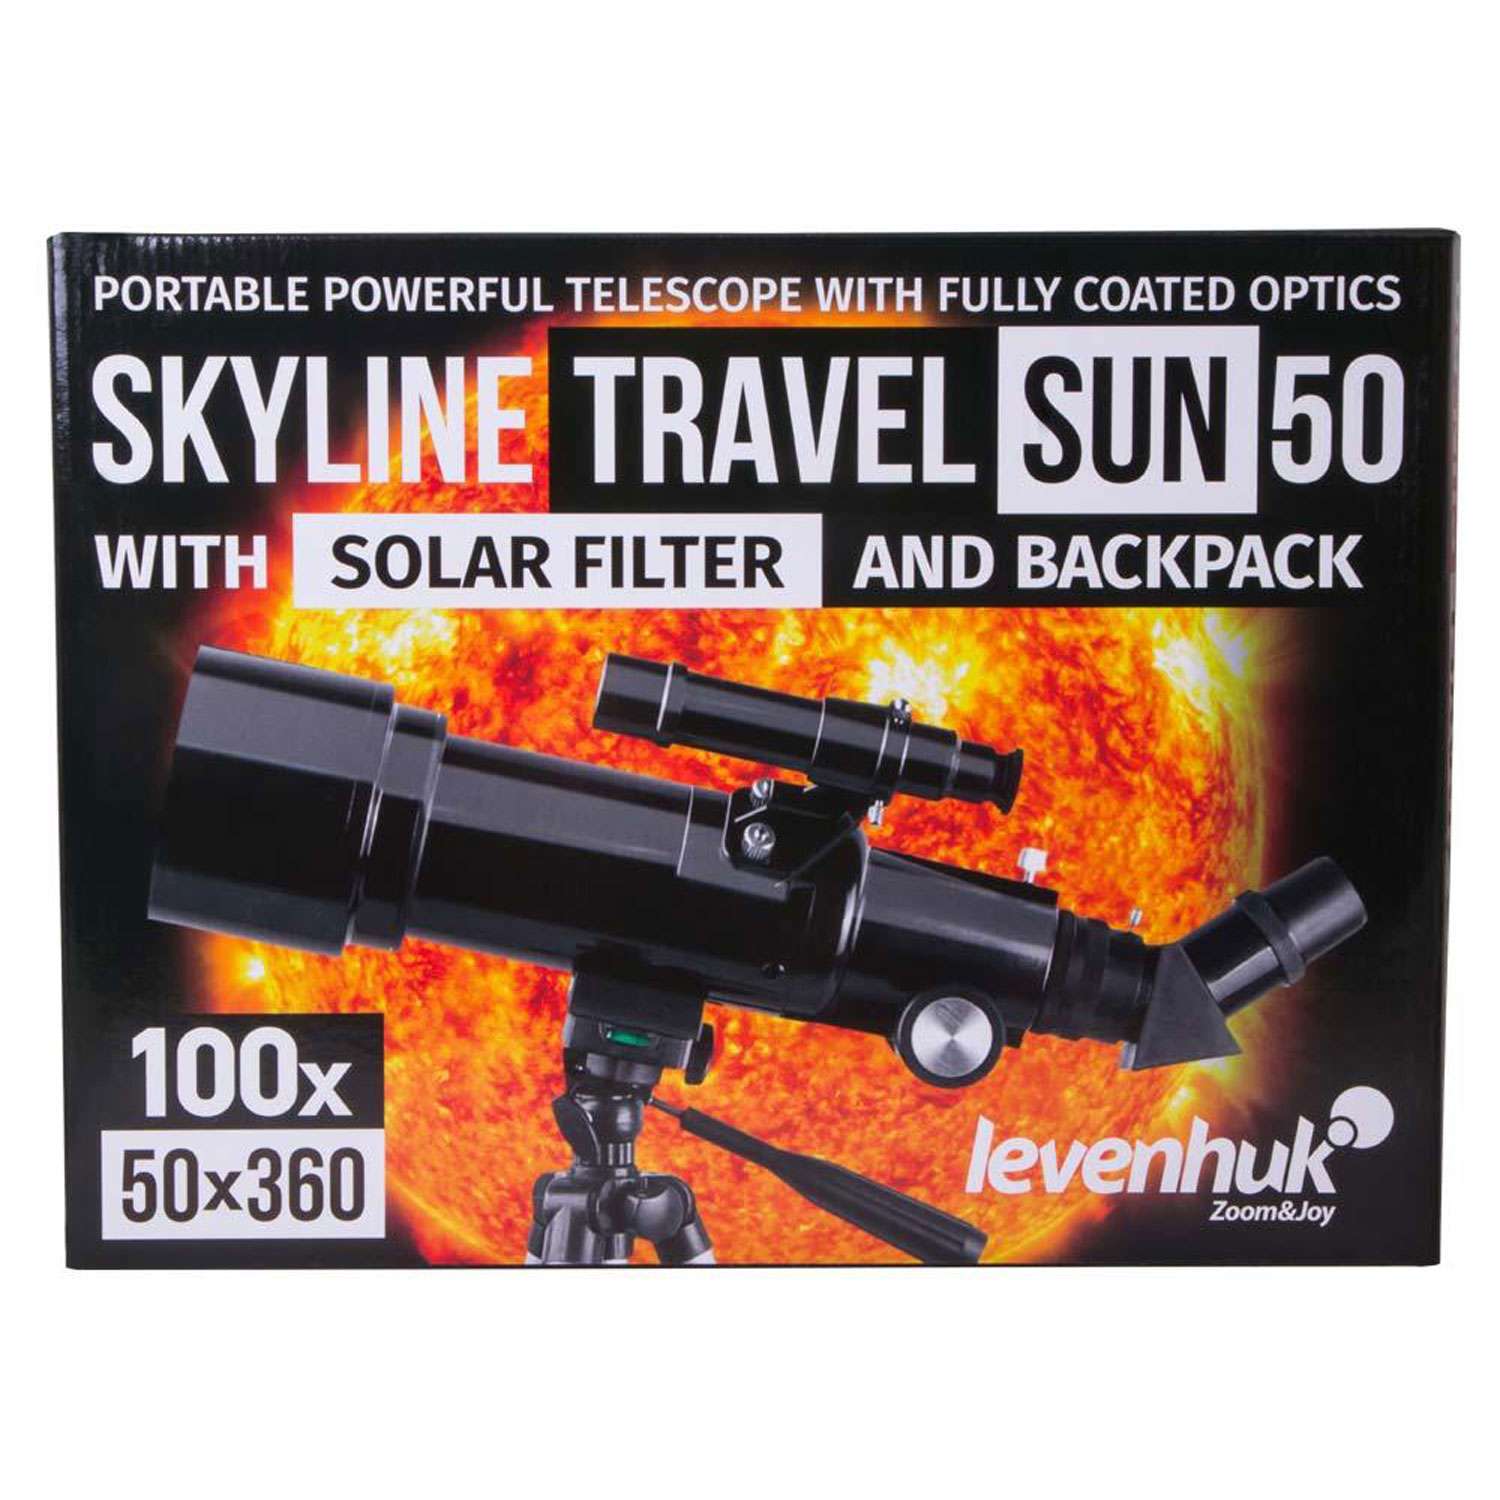 Levenhuk skyline travel. Levenhuk Skyline Travel Sun 50. Телескоп Levenhuk Skyline Travel Sun 50. Levenhuk 50 телескоп. Телескоп Levenhuk Skyline Travel Sun 50 сборка.